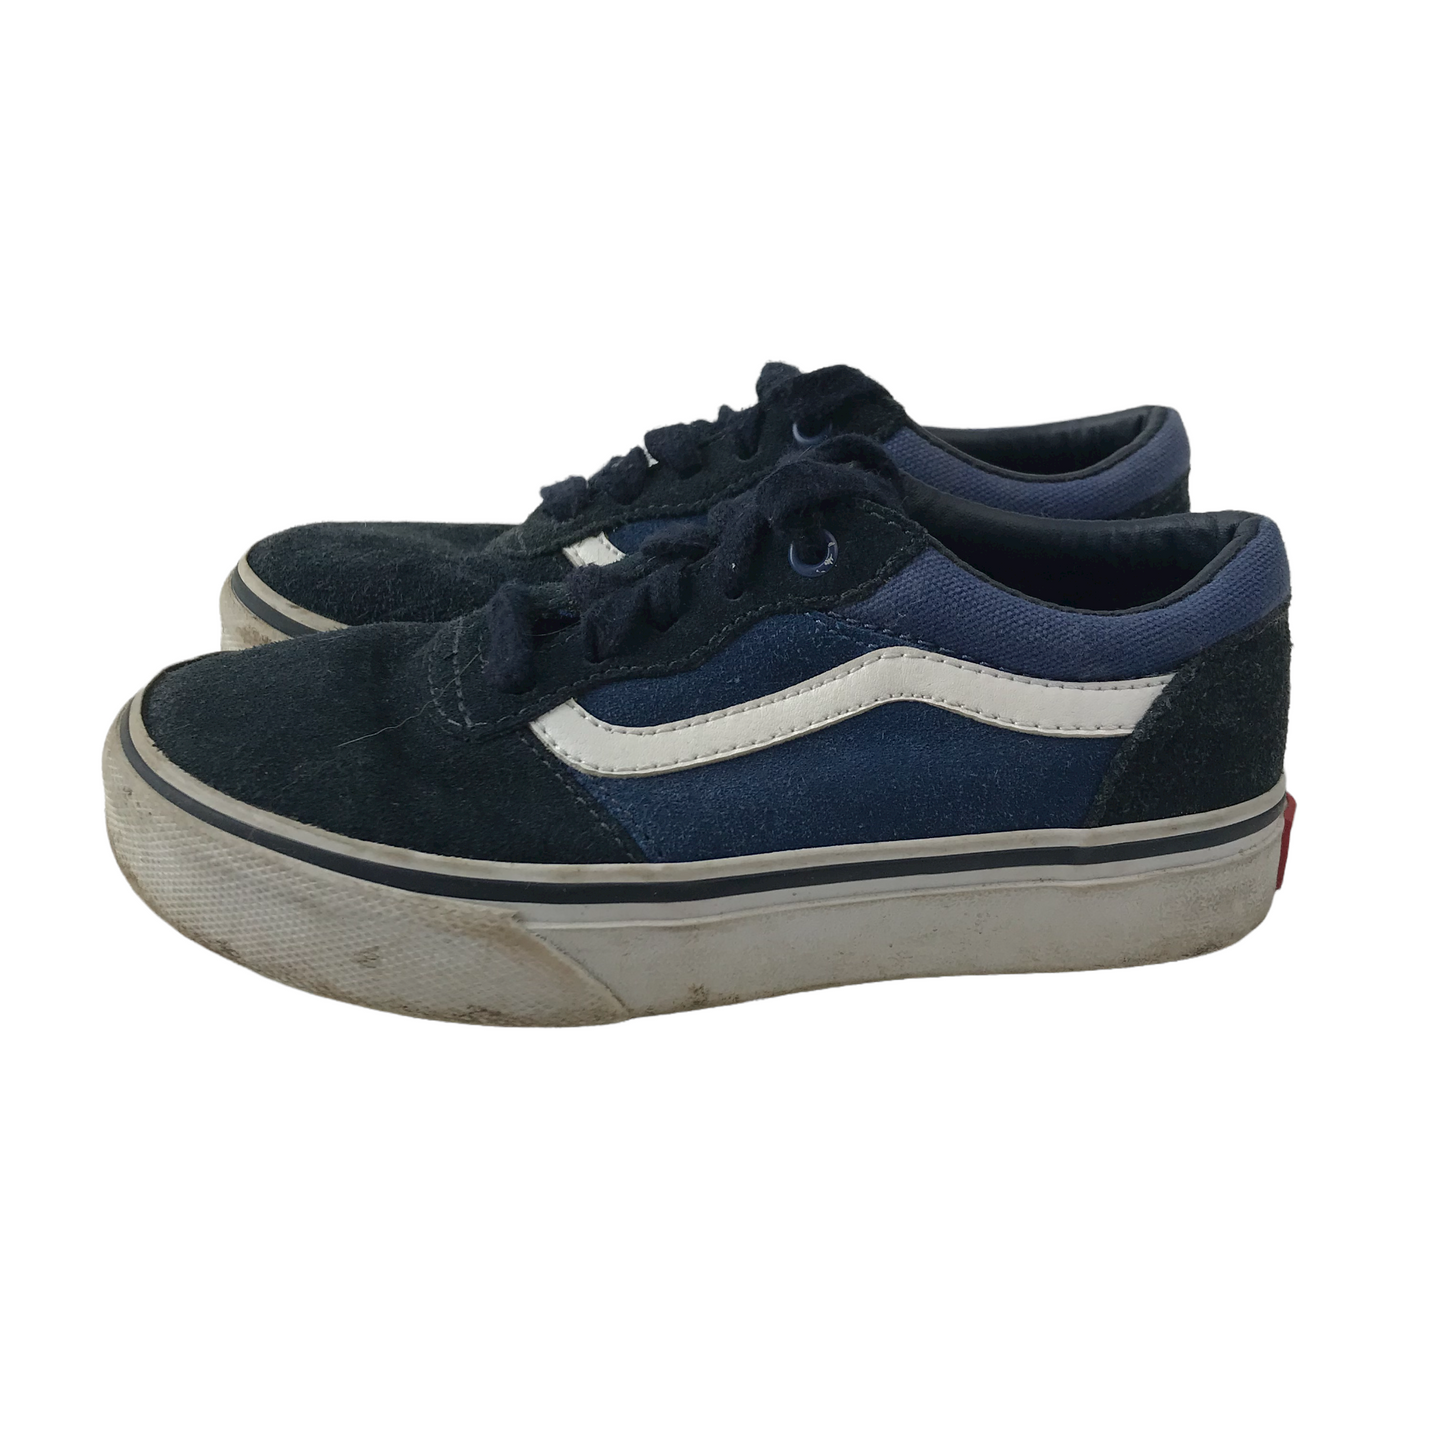 Vans Black and Blue Canvas Trainers Shoe Size 11 (jr)